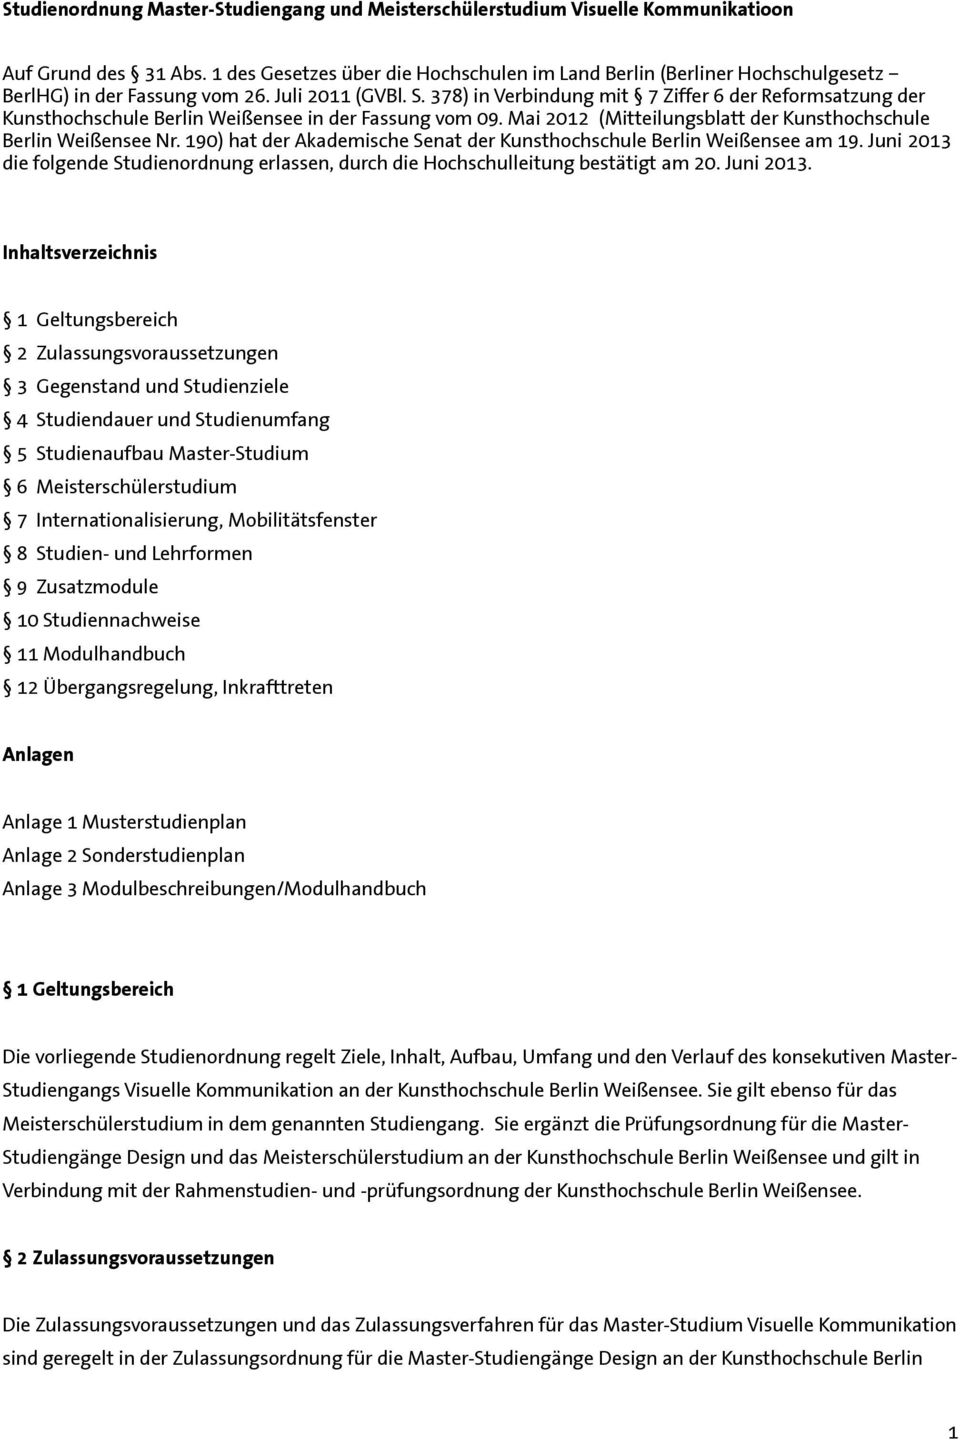 378) in Verbindung mit 7 Ziffer 6 der Reformsatzung der Kunsthochschule Berlin Weißensee in der Fassung vom 09. Mai 2012 (Mitteilungsblatt der Kunsthochschule Berlin Weißensee Nr.